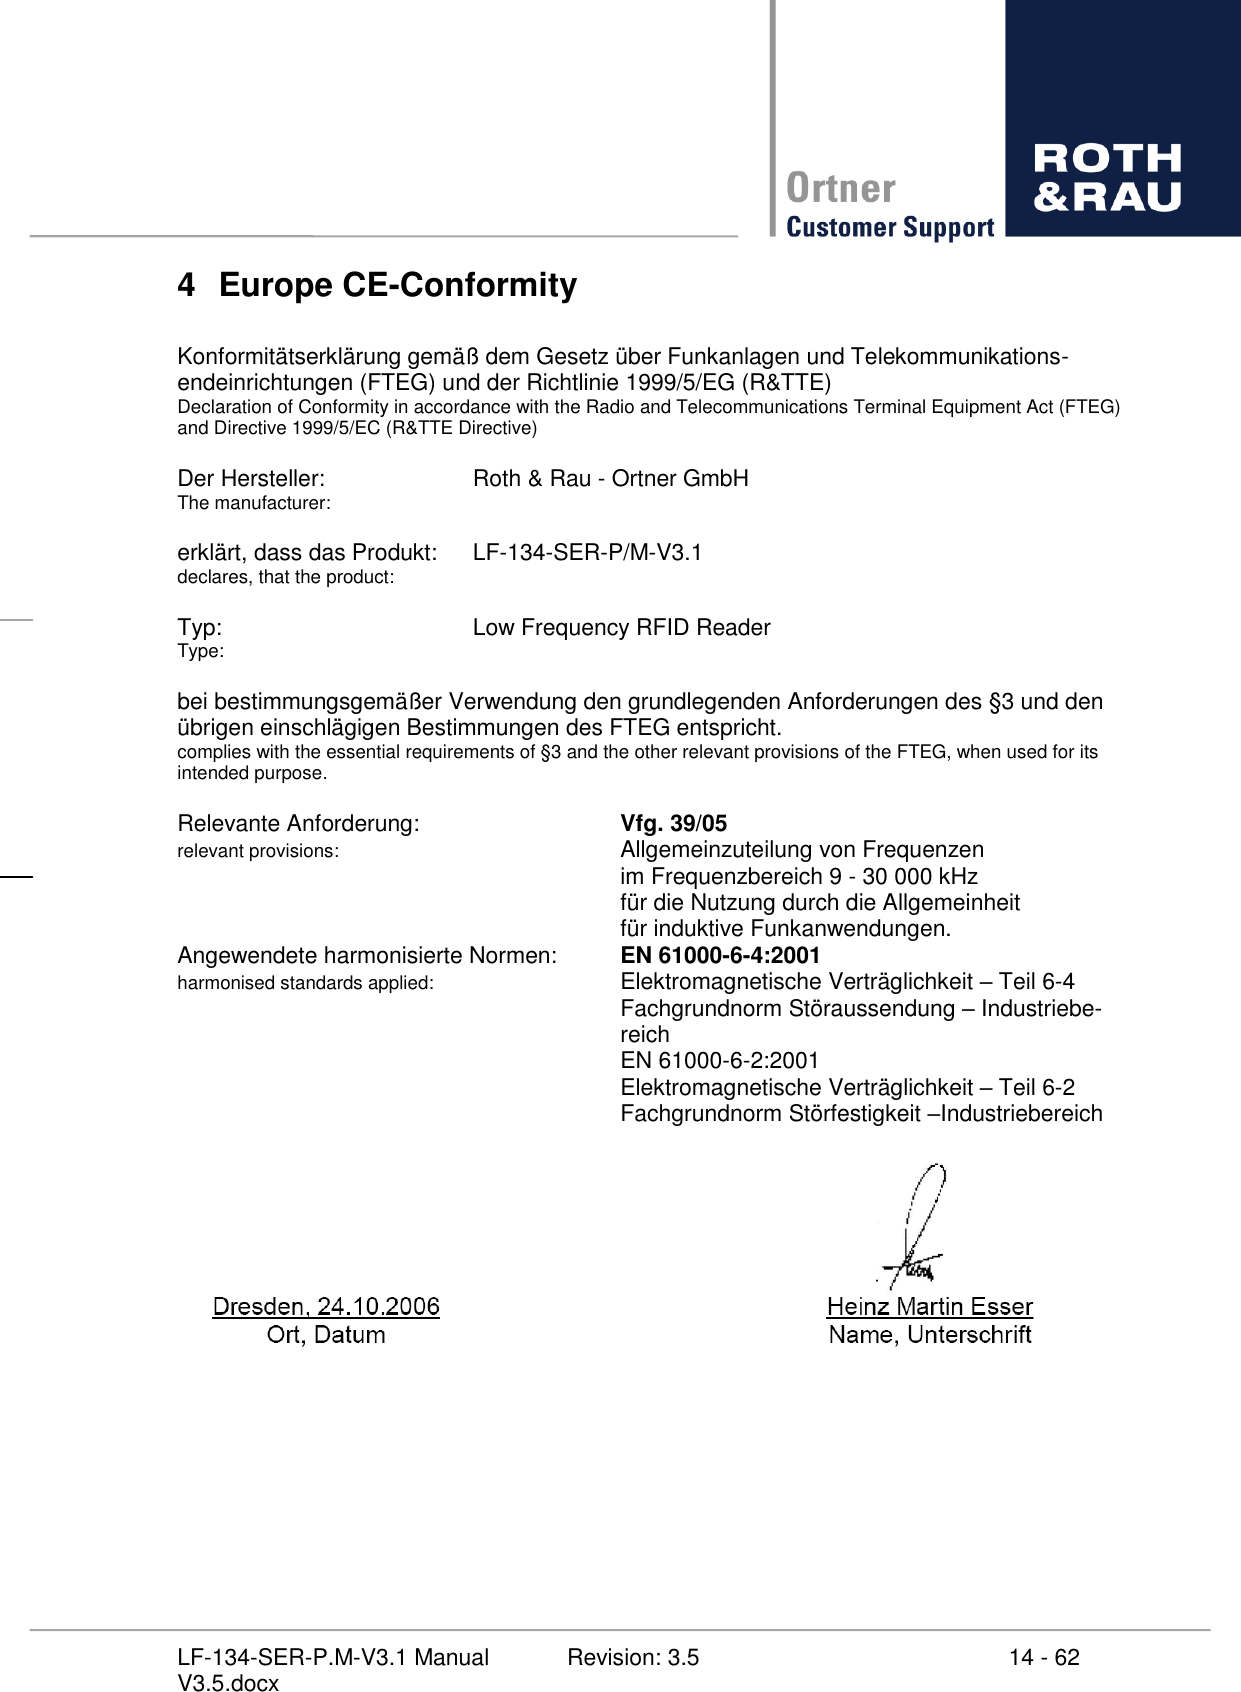     14 - 62 Revision: 3.5 LF-134-SER-P.M-V3.1 Manual V3.5.docx 4  Europe CE-Conformity  Konformitätserklärung gemäß dem Gesetz über Funkanlagen und Telekommunikations-endeinrichtungen (FTEG) und der Richtlinie 1999/5/EG (R&amp;TTE) Declaration of Conformity in accordance with the Radio and Telecommunications Terminal Equipment Act (FTEG) and Directive 1999/5/EC (R&amp;TTE Directive)  Der Hersteller:    Roth &amp; Rau - Ortner GmbH The manufacturer:  erklärt, dass das Produkt:  LF-134-SER-P/M-V3.1 declares, that the product:  Typ:        Low Frequency RFID Reader Type:  bei bestimmungsgemäßer Verwendung den grundlegenden Anforderungen des §3 und den übrigen einschlägigen Bestimmungen des FTEG entspricht. complies with the essential requirements of §3 and the other relevant provisions of the FTEG, when used for its intended purpose.  Relevante Anforderung:       Vfg. 39/05 relevant provisions:         Allgemeinzuteilung von Frequenzen             im Frequenzbereich 9 - 30 000 kHz             für die Nutzung durch die Allgemeinheit              für induktive Funkanwendungen. Angewendete harmonisierte Normen:  EN 61000-6-4:2001 harmonised standards applied:       Elektromagnetische Verträglichkeit  Teil 6-4             Fachgrundnorm Störaussendung  Industriebe-            reich             EN 61000-6-2:2001             Elektromagnetische Verträglichkeit  Teil 6-2             Fachgrundnorm Störfestigkeit Industriebereich  